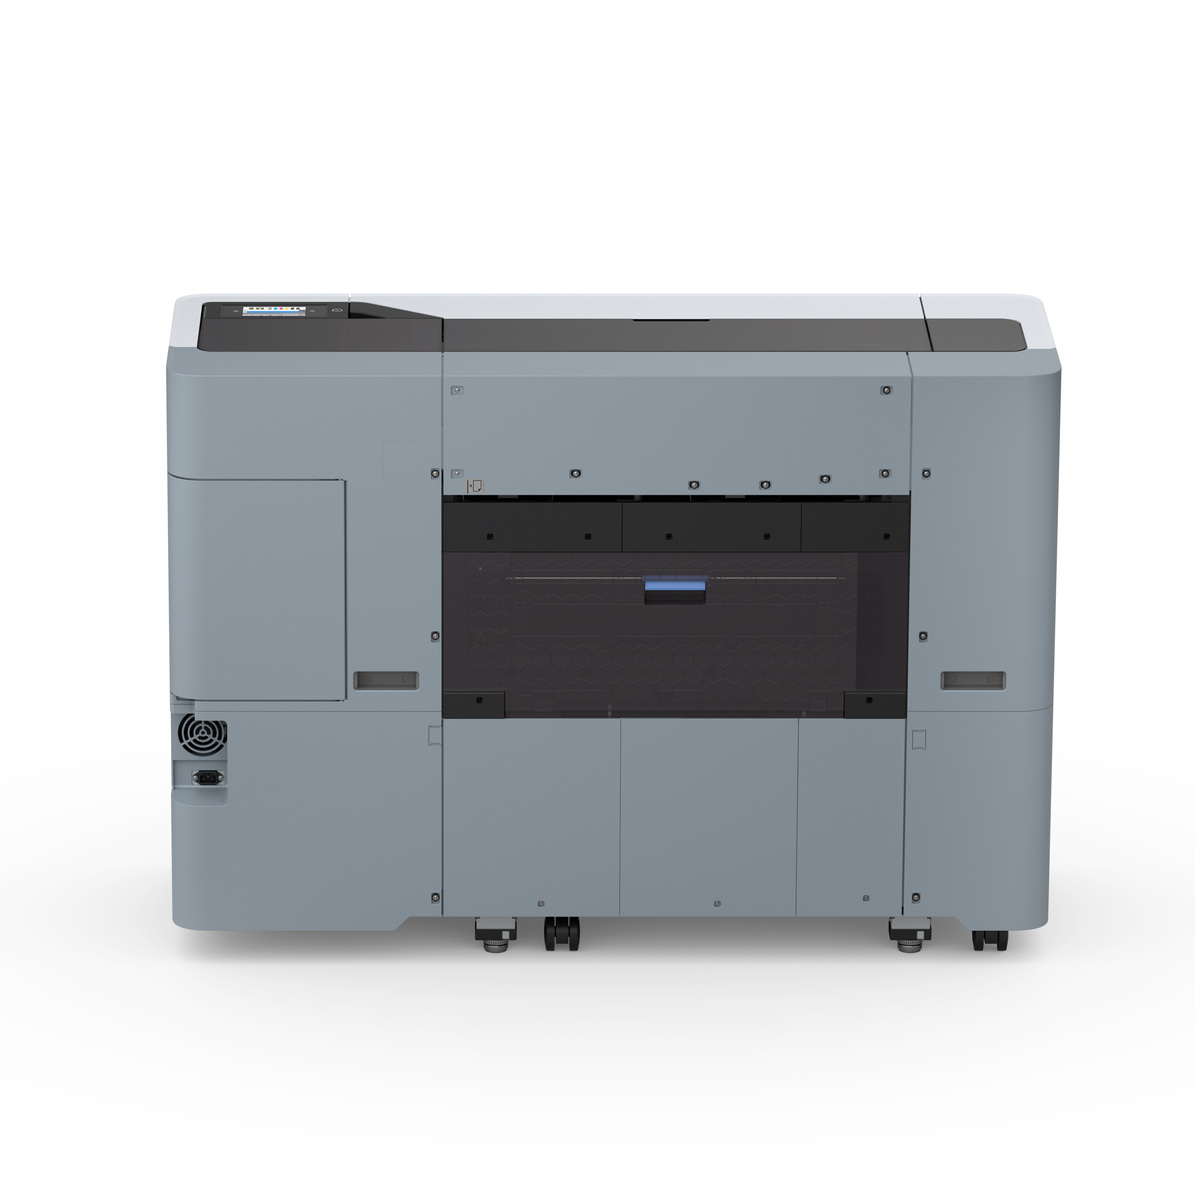 Epson SureColor SC-P6530D Large Format Professional Photo Printer